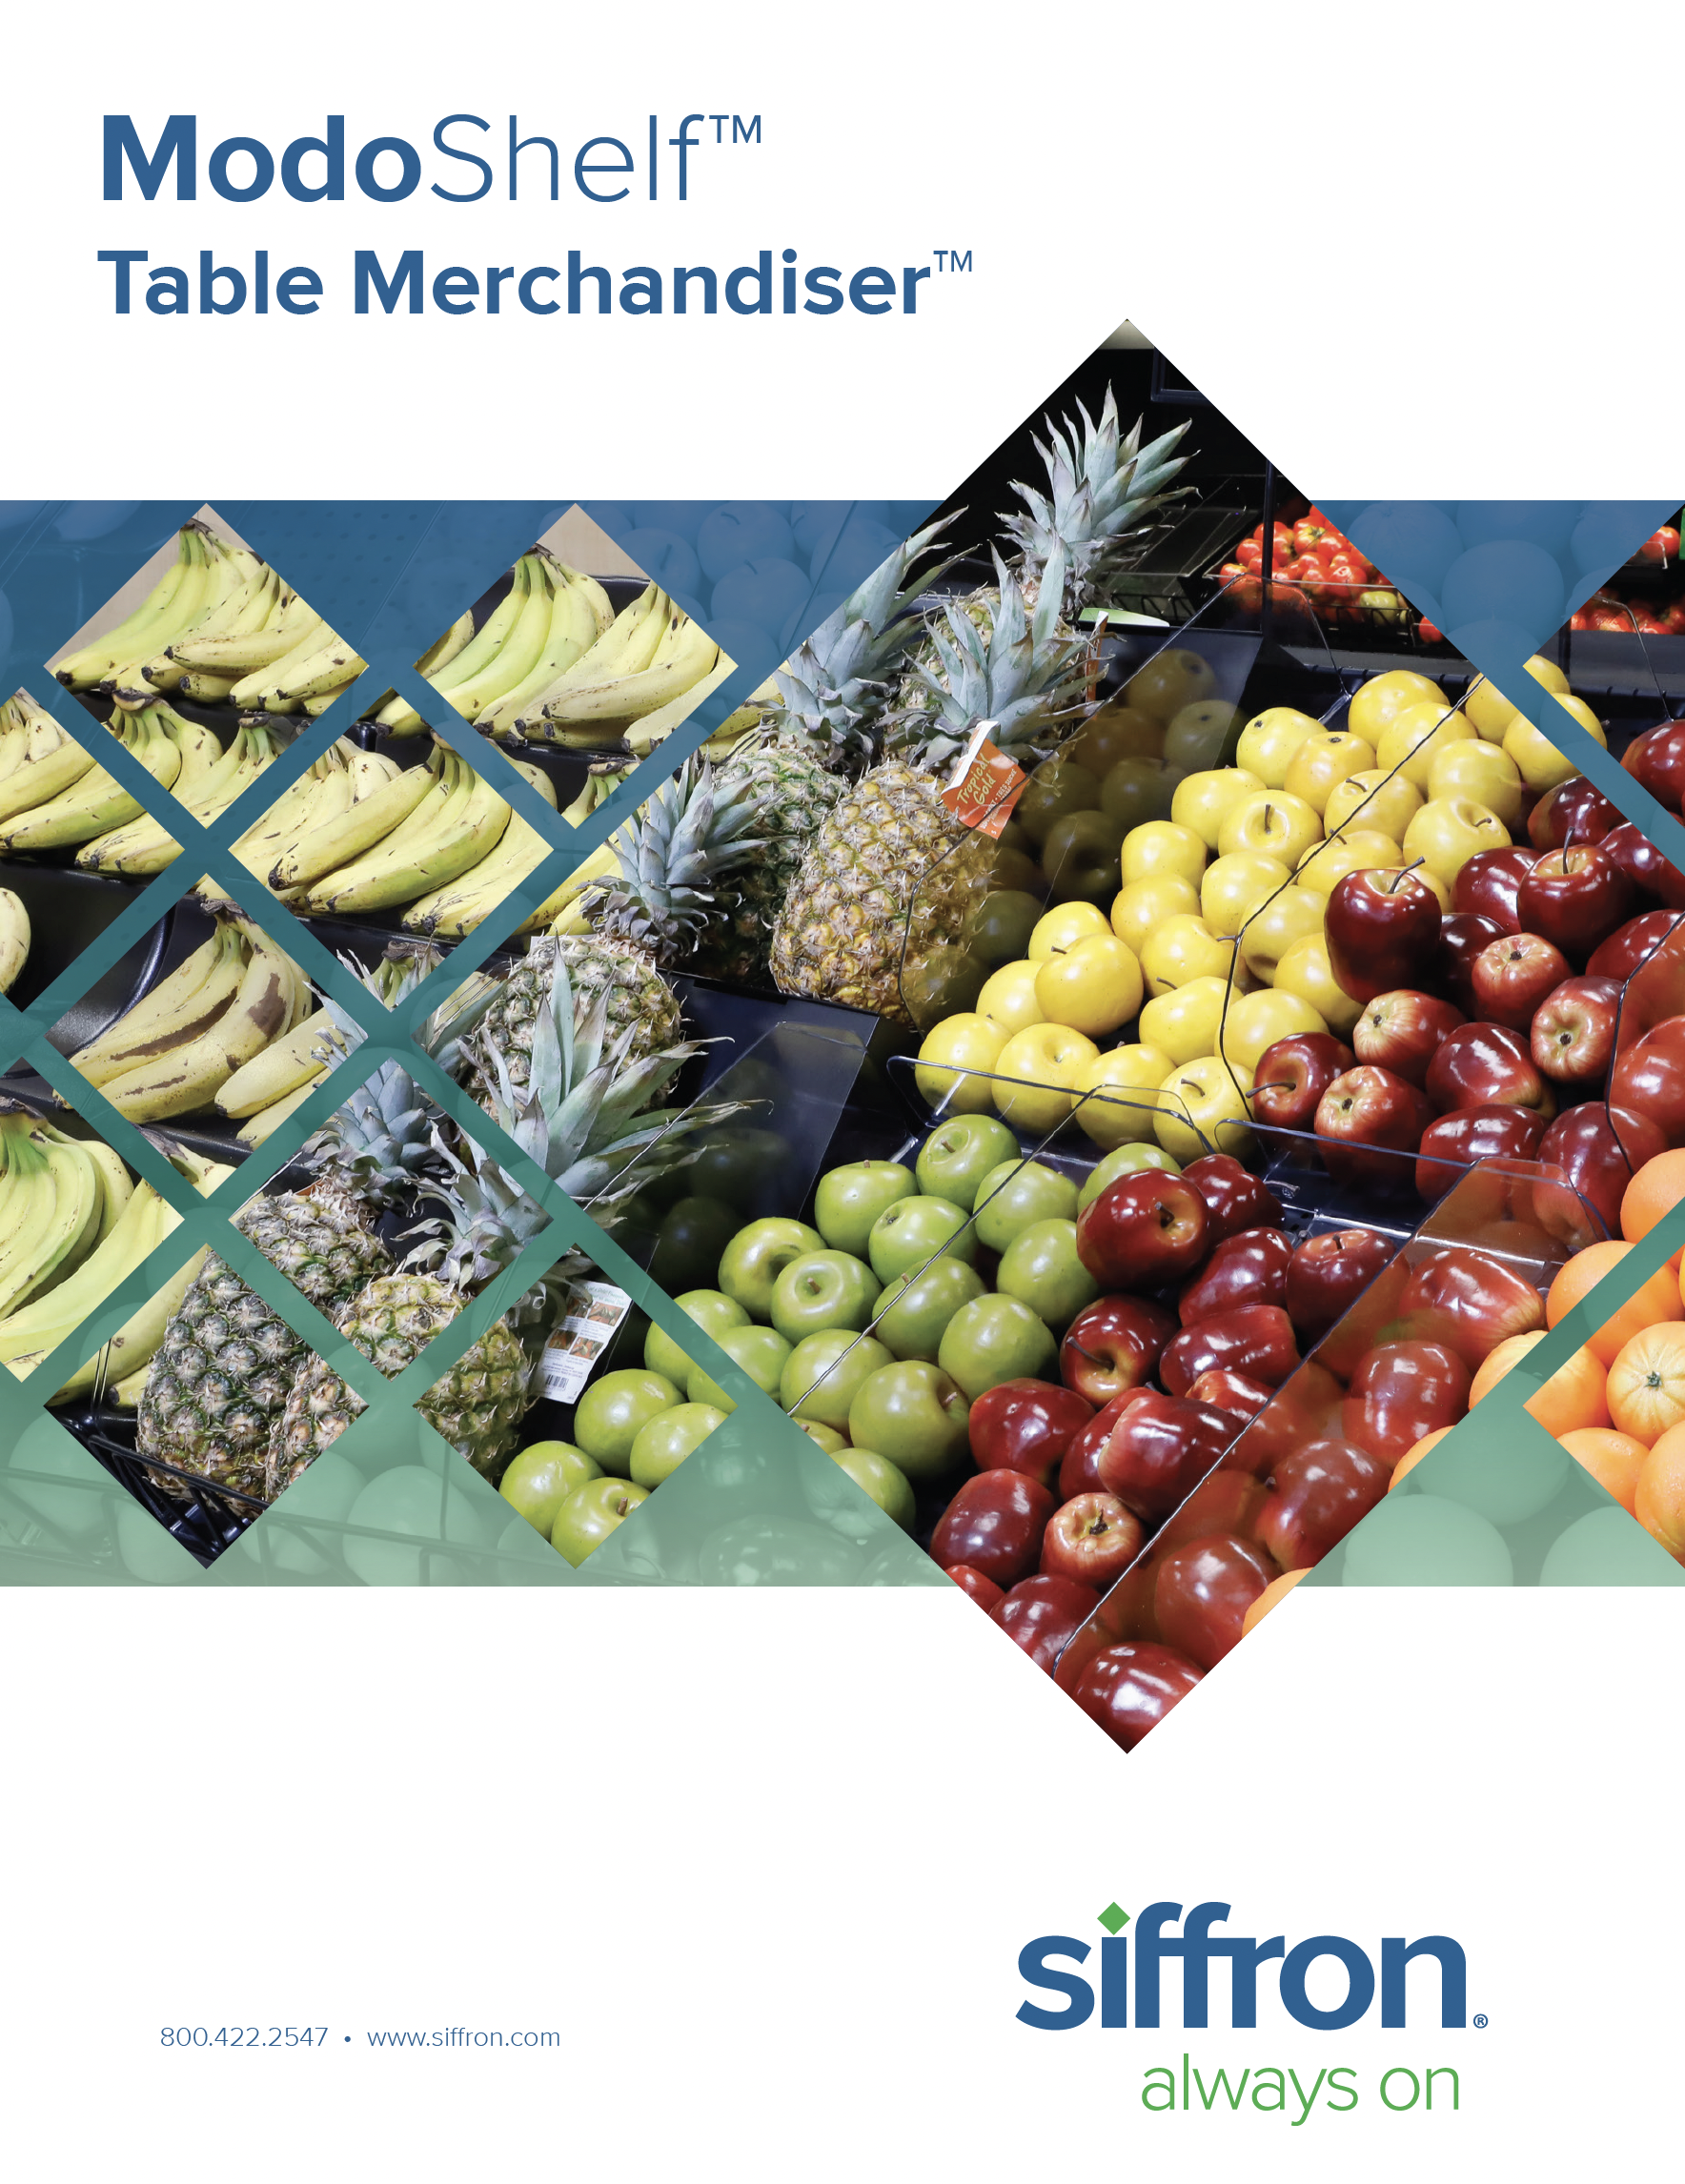 ModoShelf™ Table Merchandiser